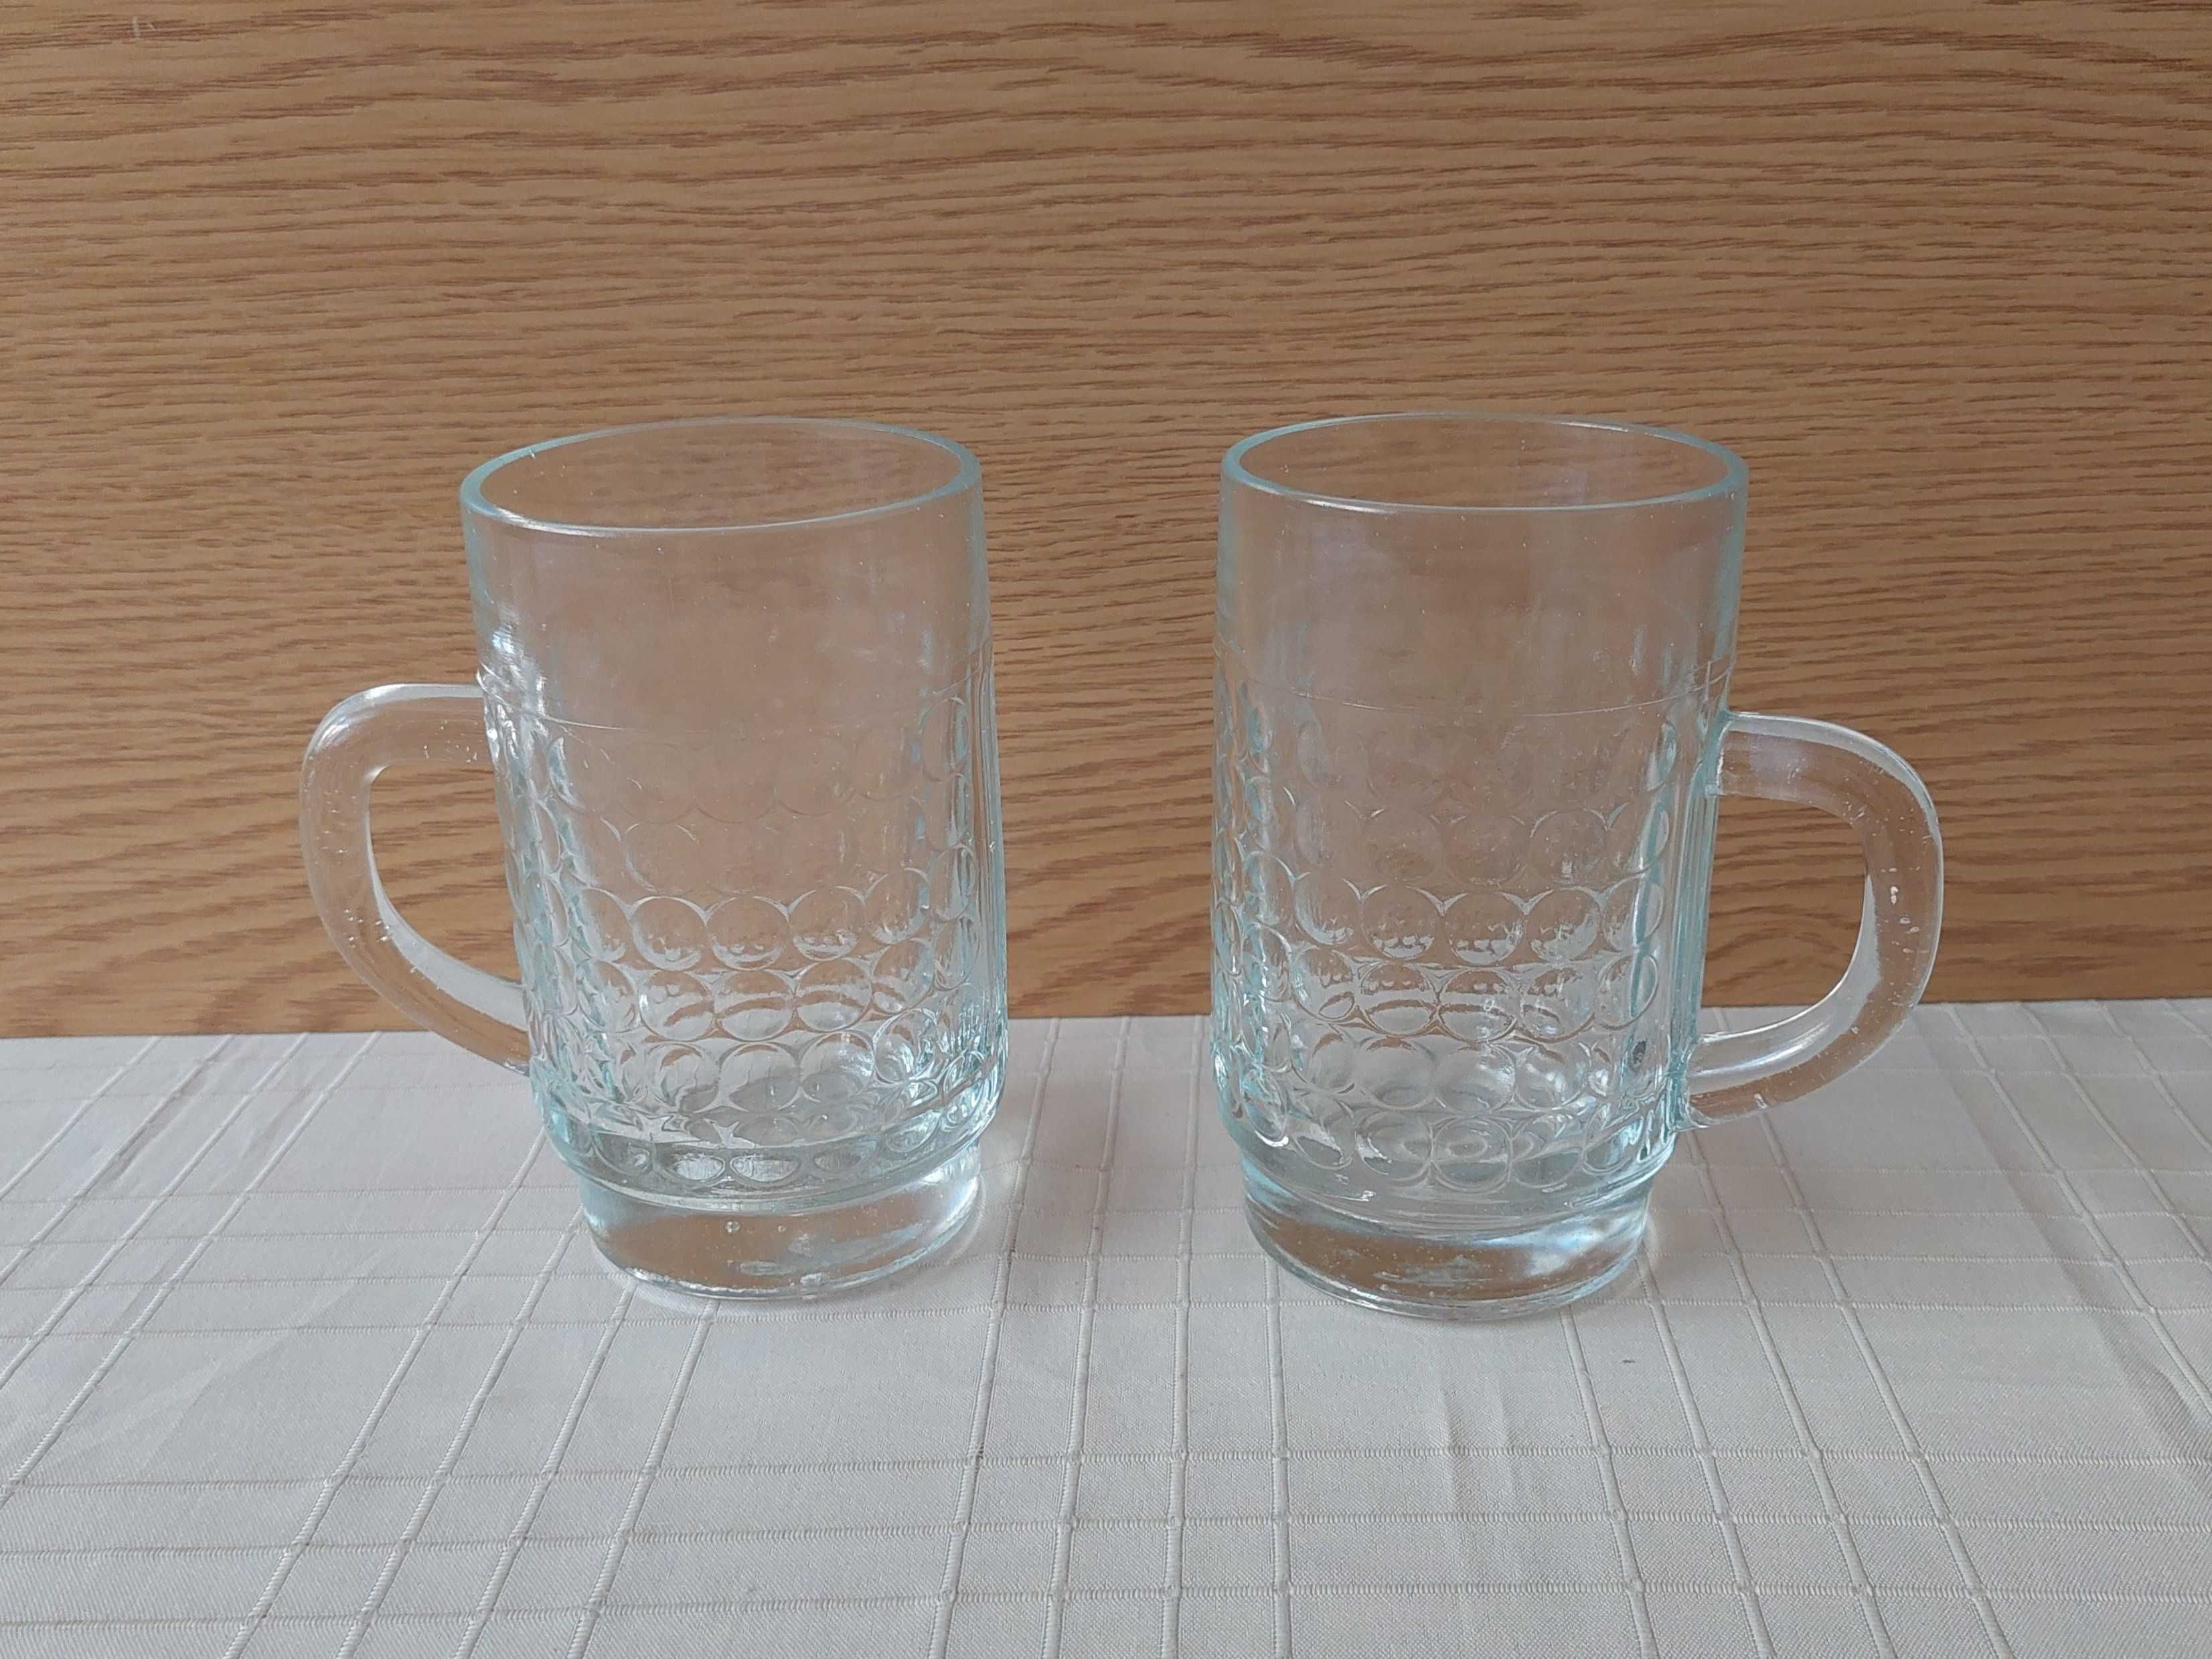 Dwa szklane kufle (0.5 L)